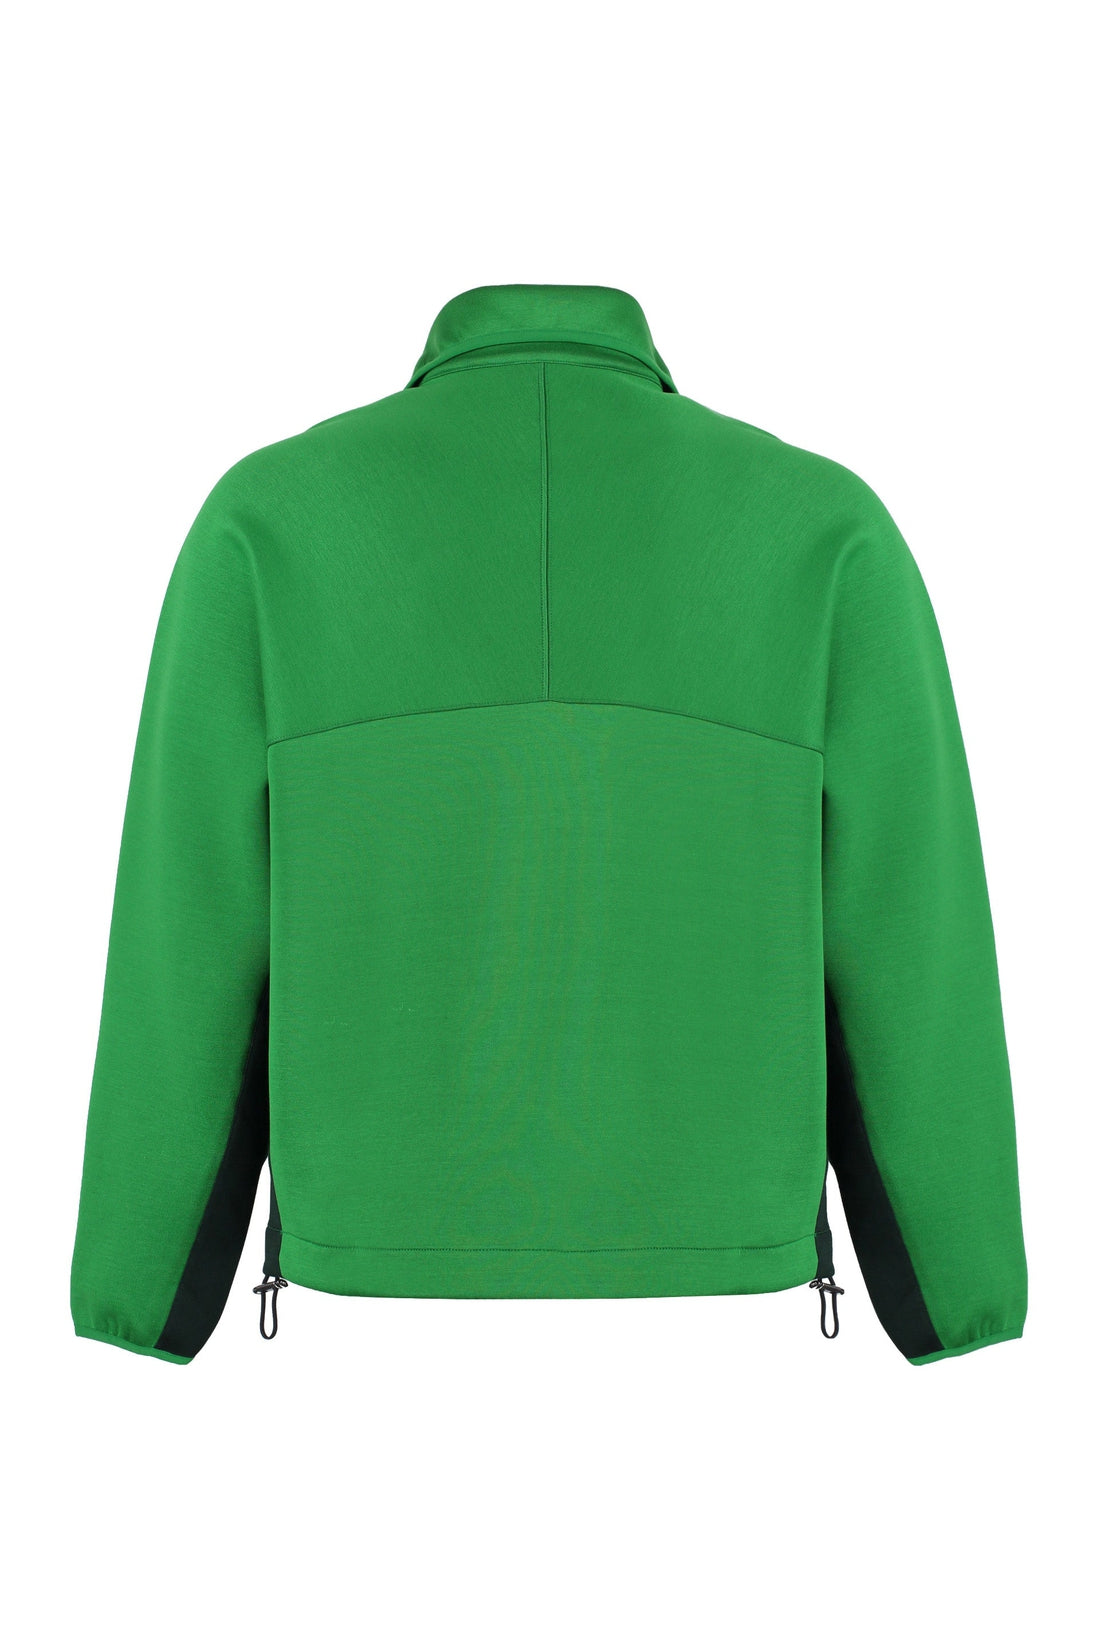 AMI PARIS-OUTLET-SALE-Half zip sweatshirt-ARCHIVIST